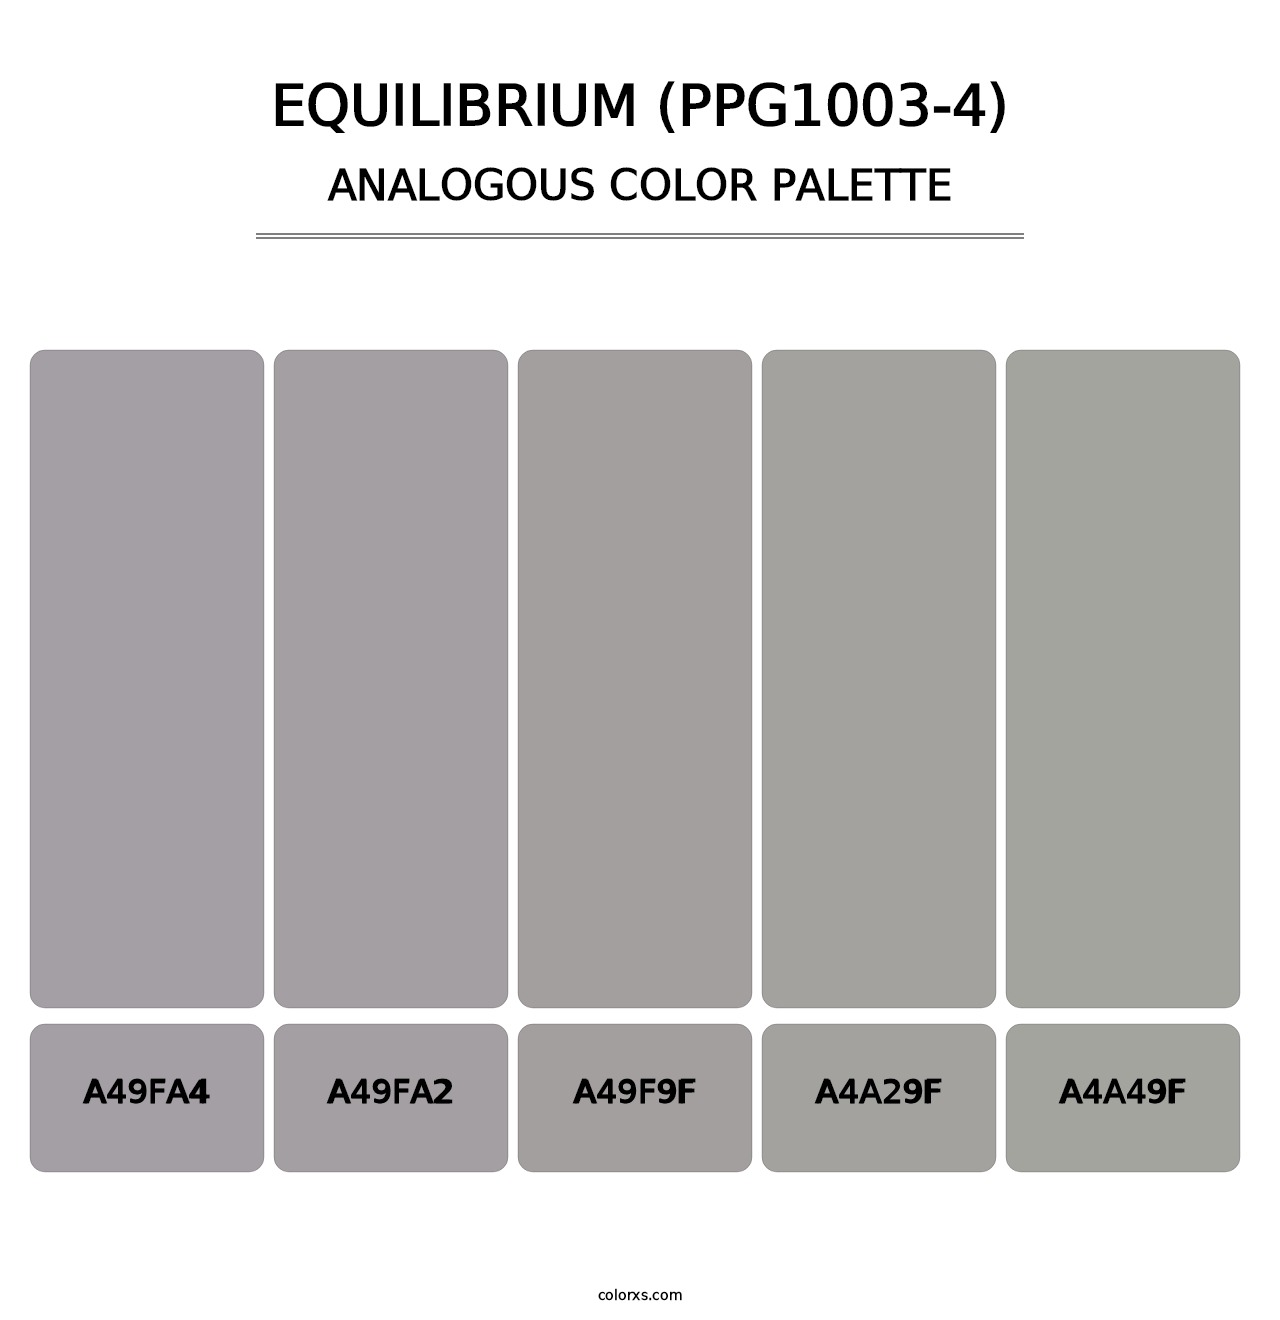 Equilibrium (PPG1003-4) - Analogous Color Palette